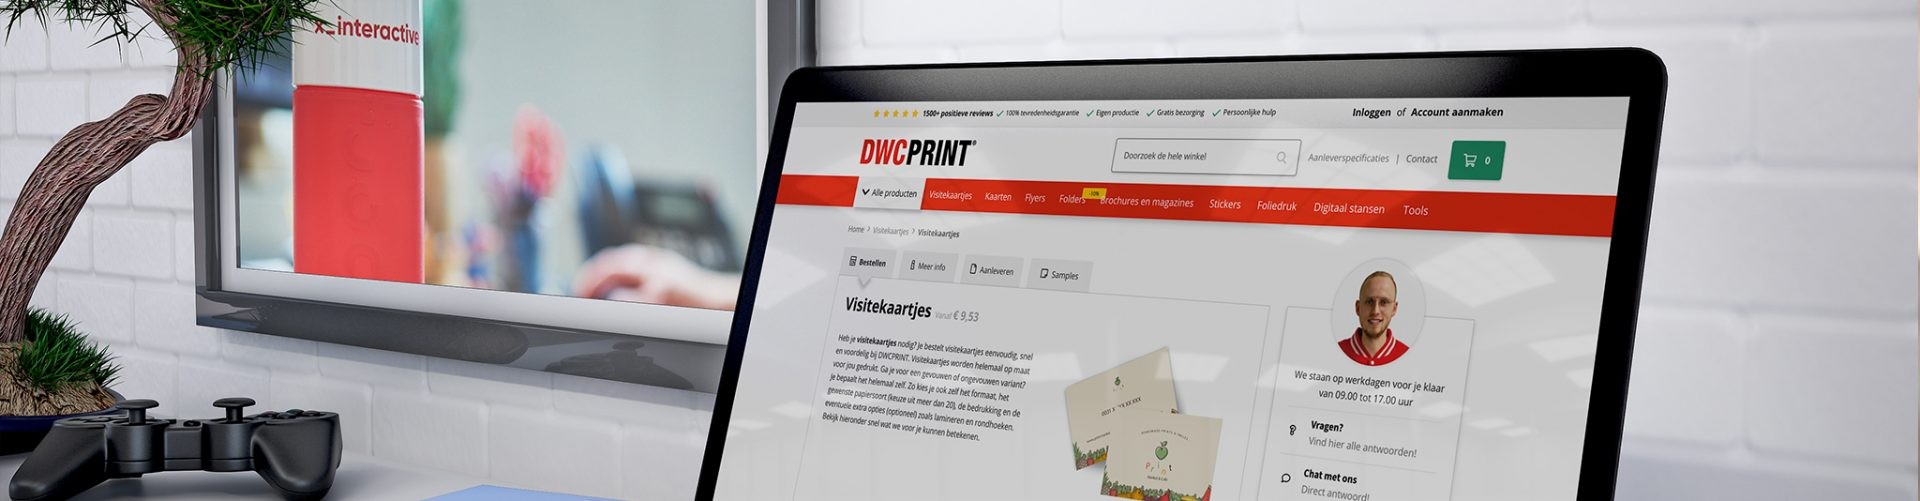 DWC Print online drukker